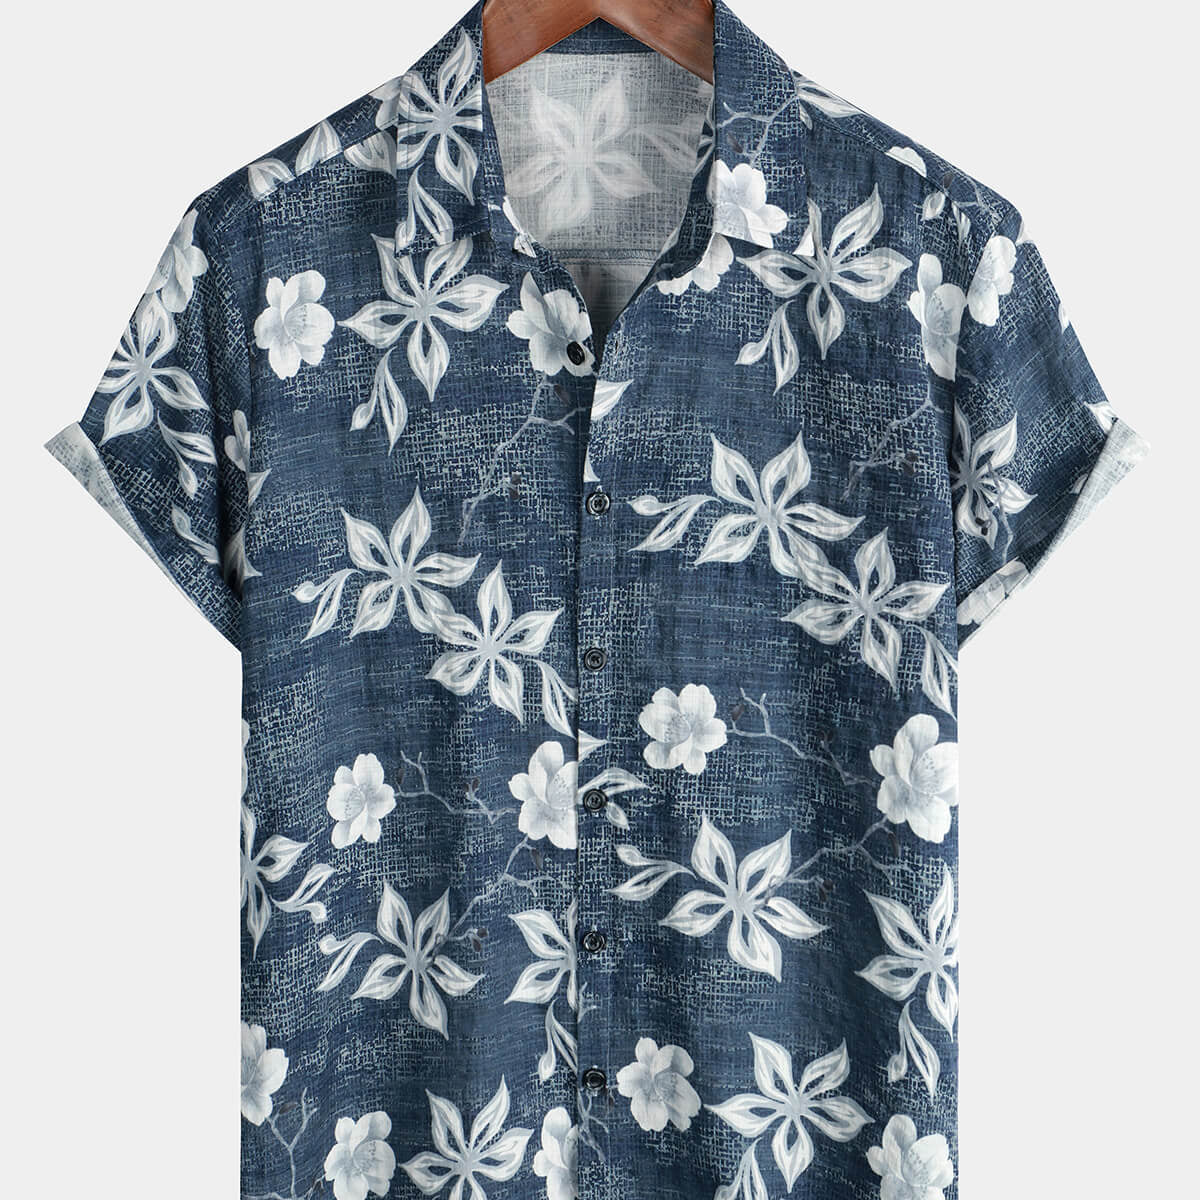 Men's Hawaiian Floral Short Sleeve Button Summer Beach Shirt